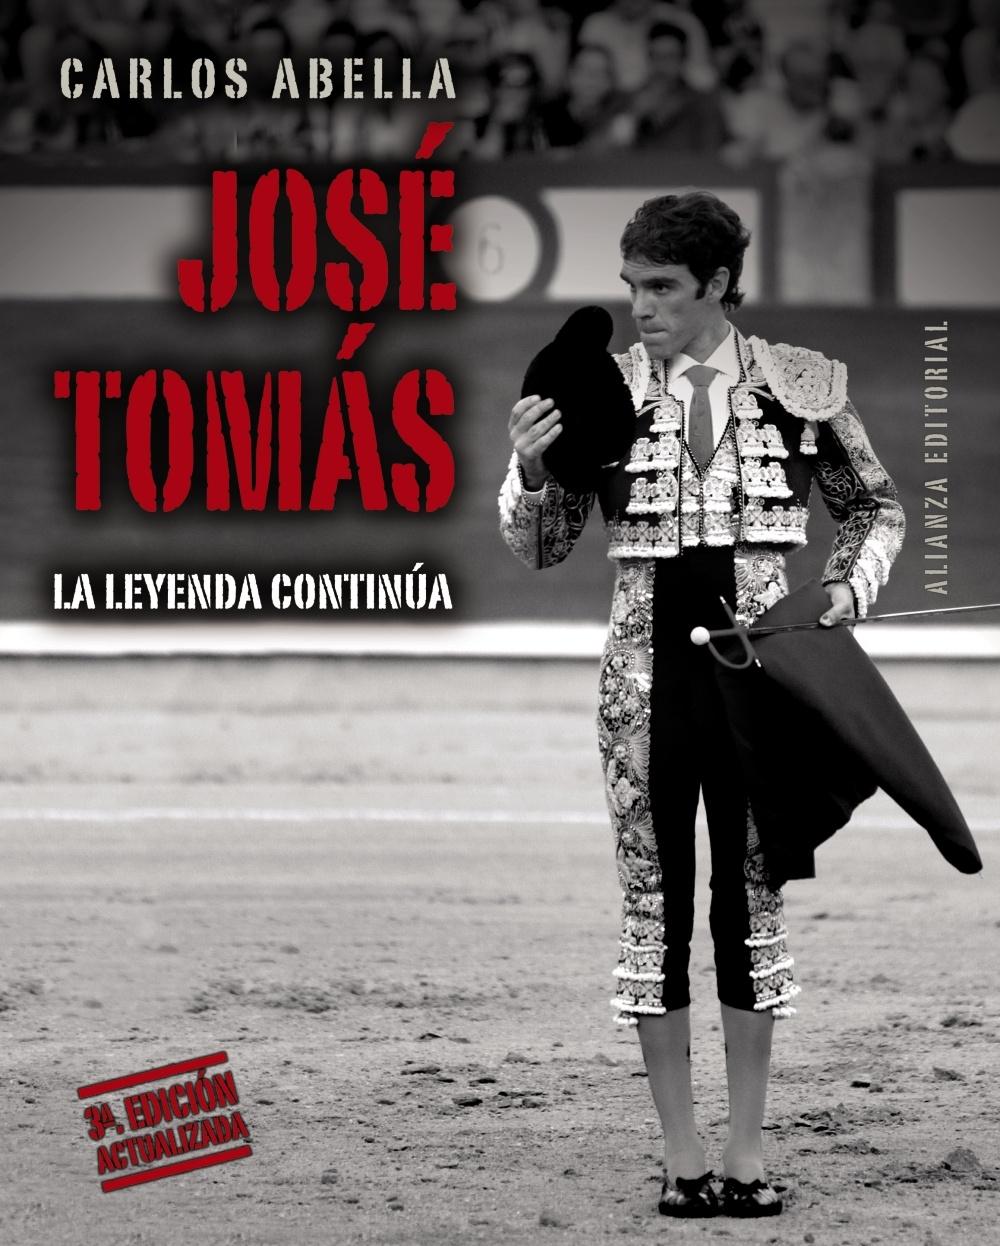 José Tomás "La leyenda continúa". 